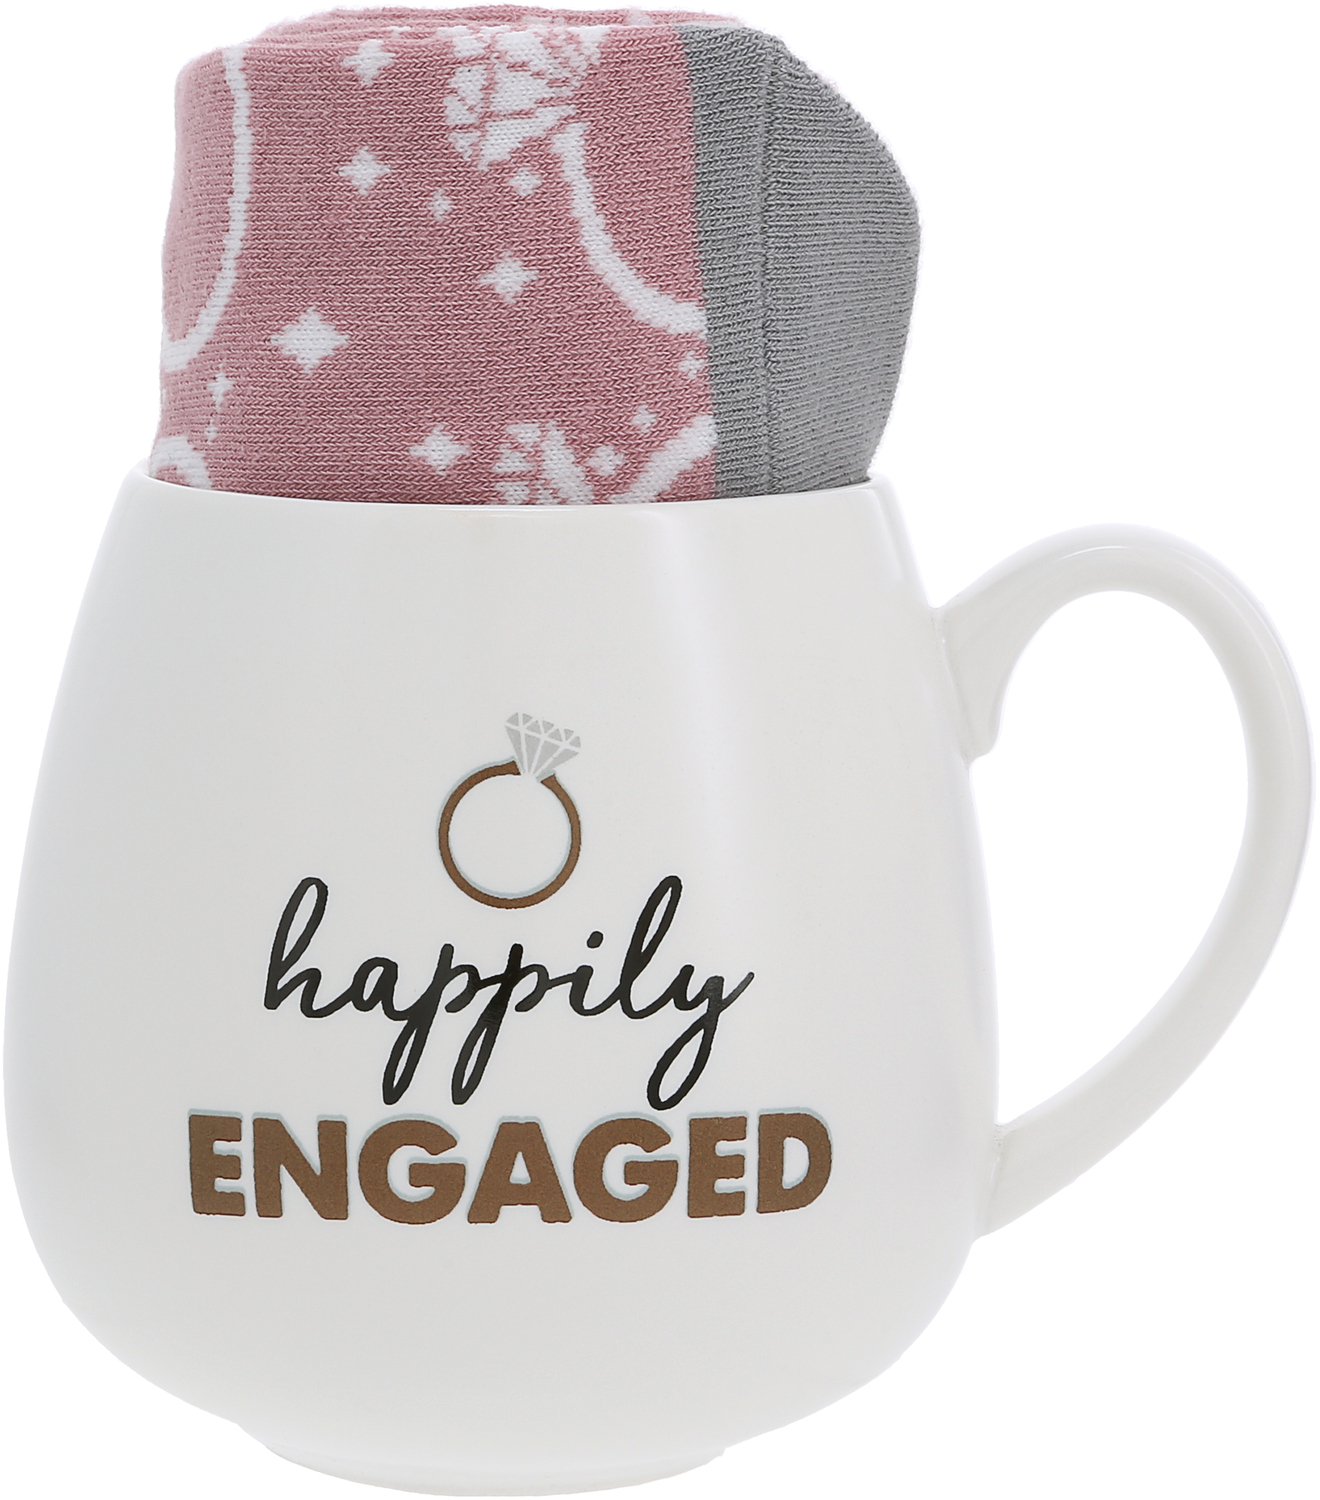 Happily Engaged by Warm & Toe-sty - Happily Engaged - 15.5 oz Mug and Sock Set